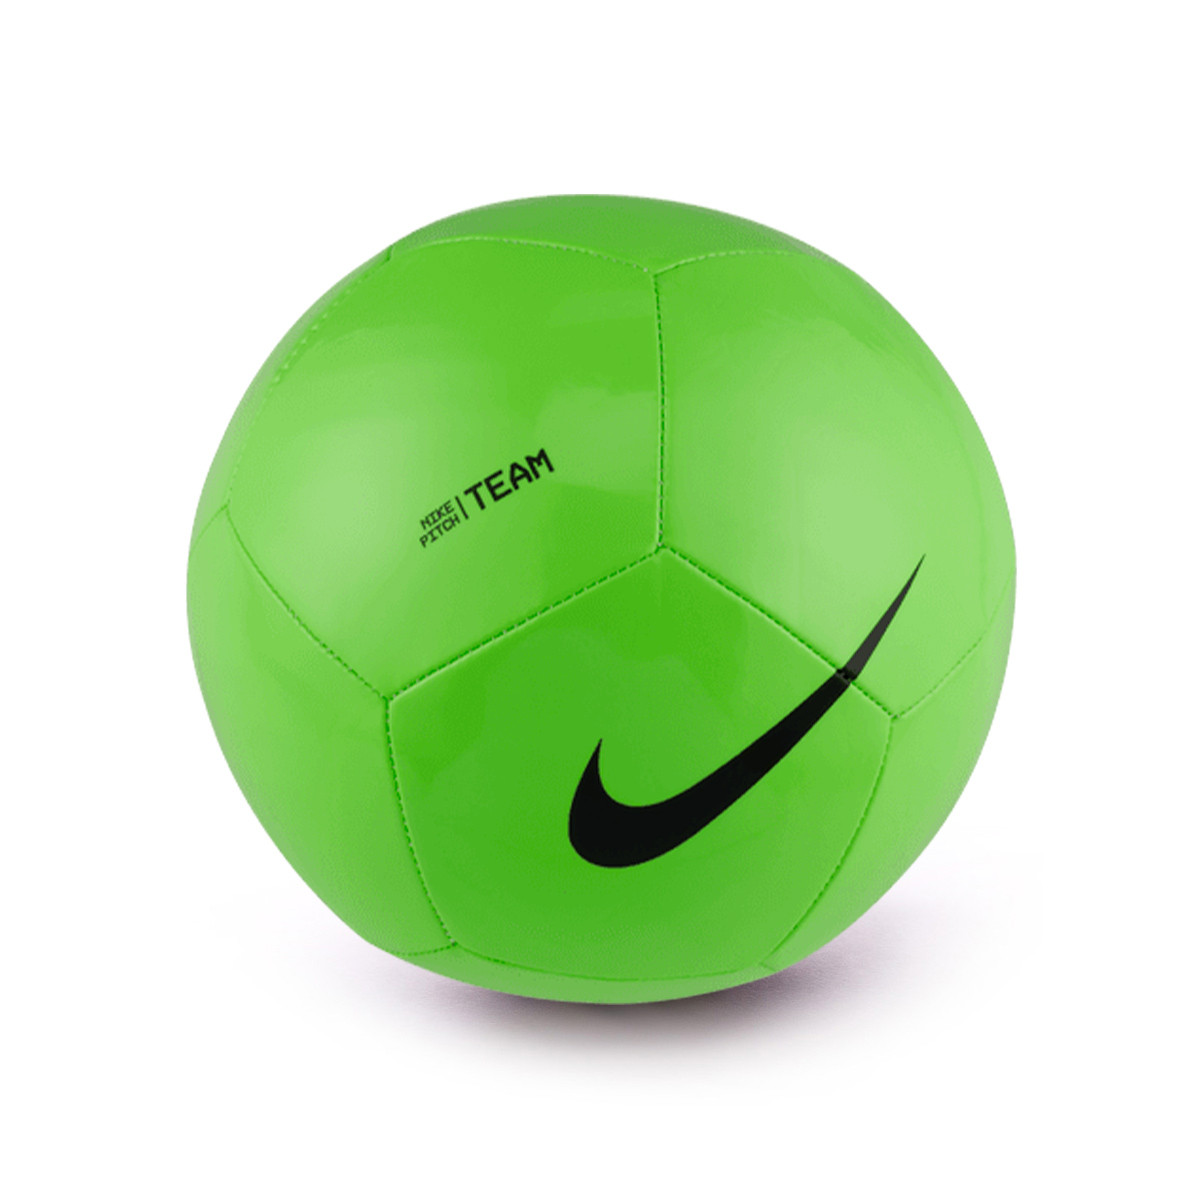 apoyo Corte Silenciosamente Balón Nike Pitch Team Electric Green-Black - Fútbol Emotion